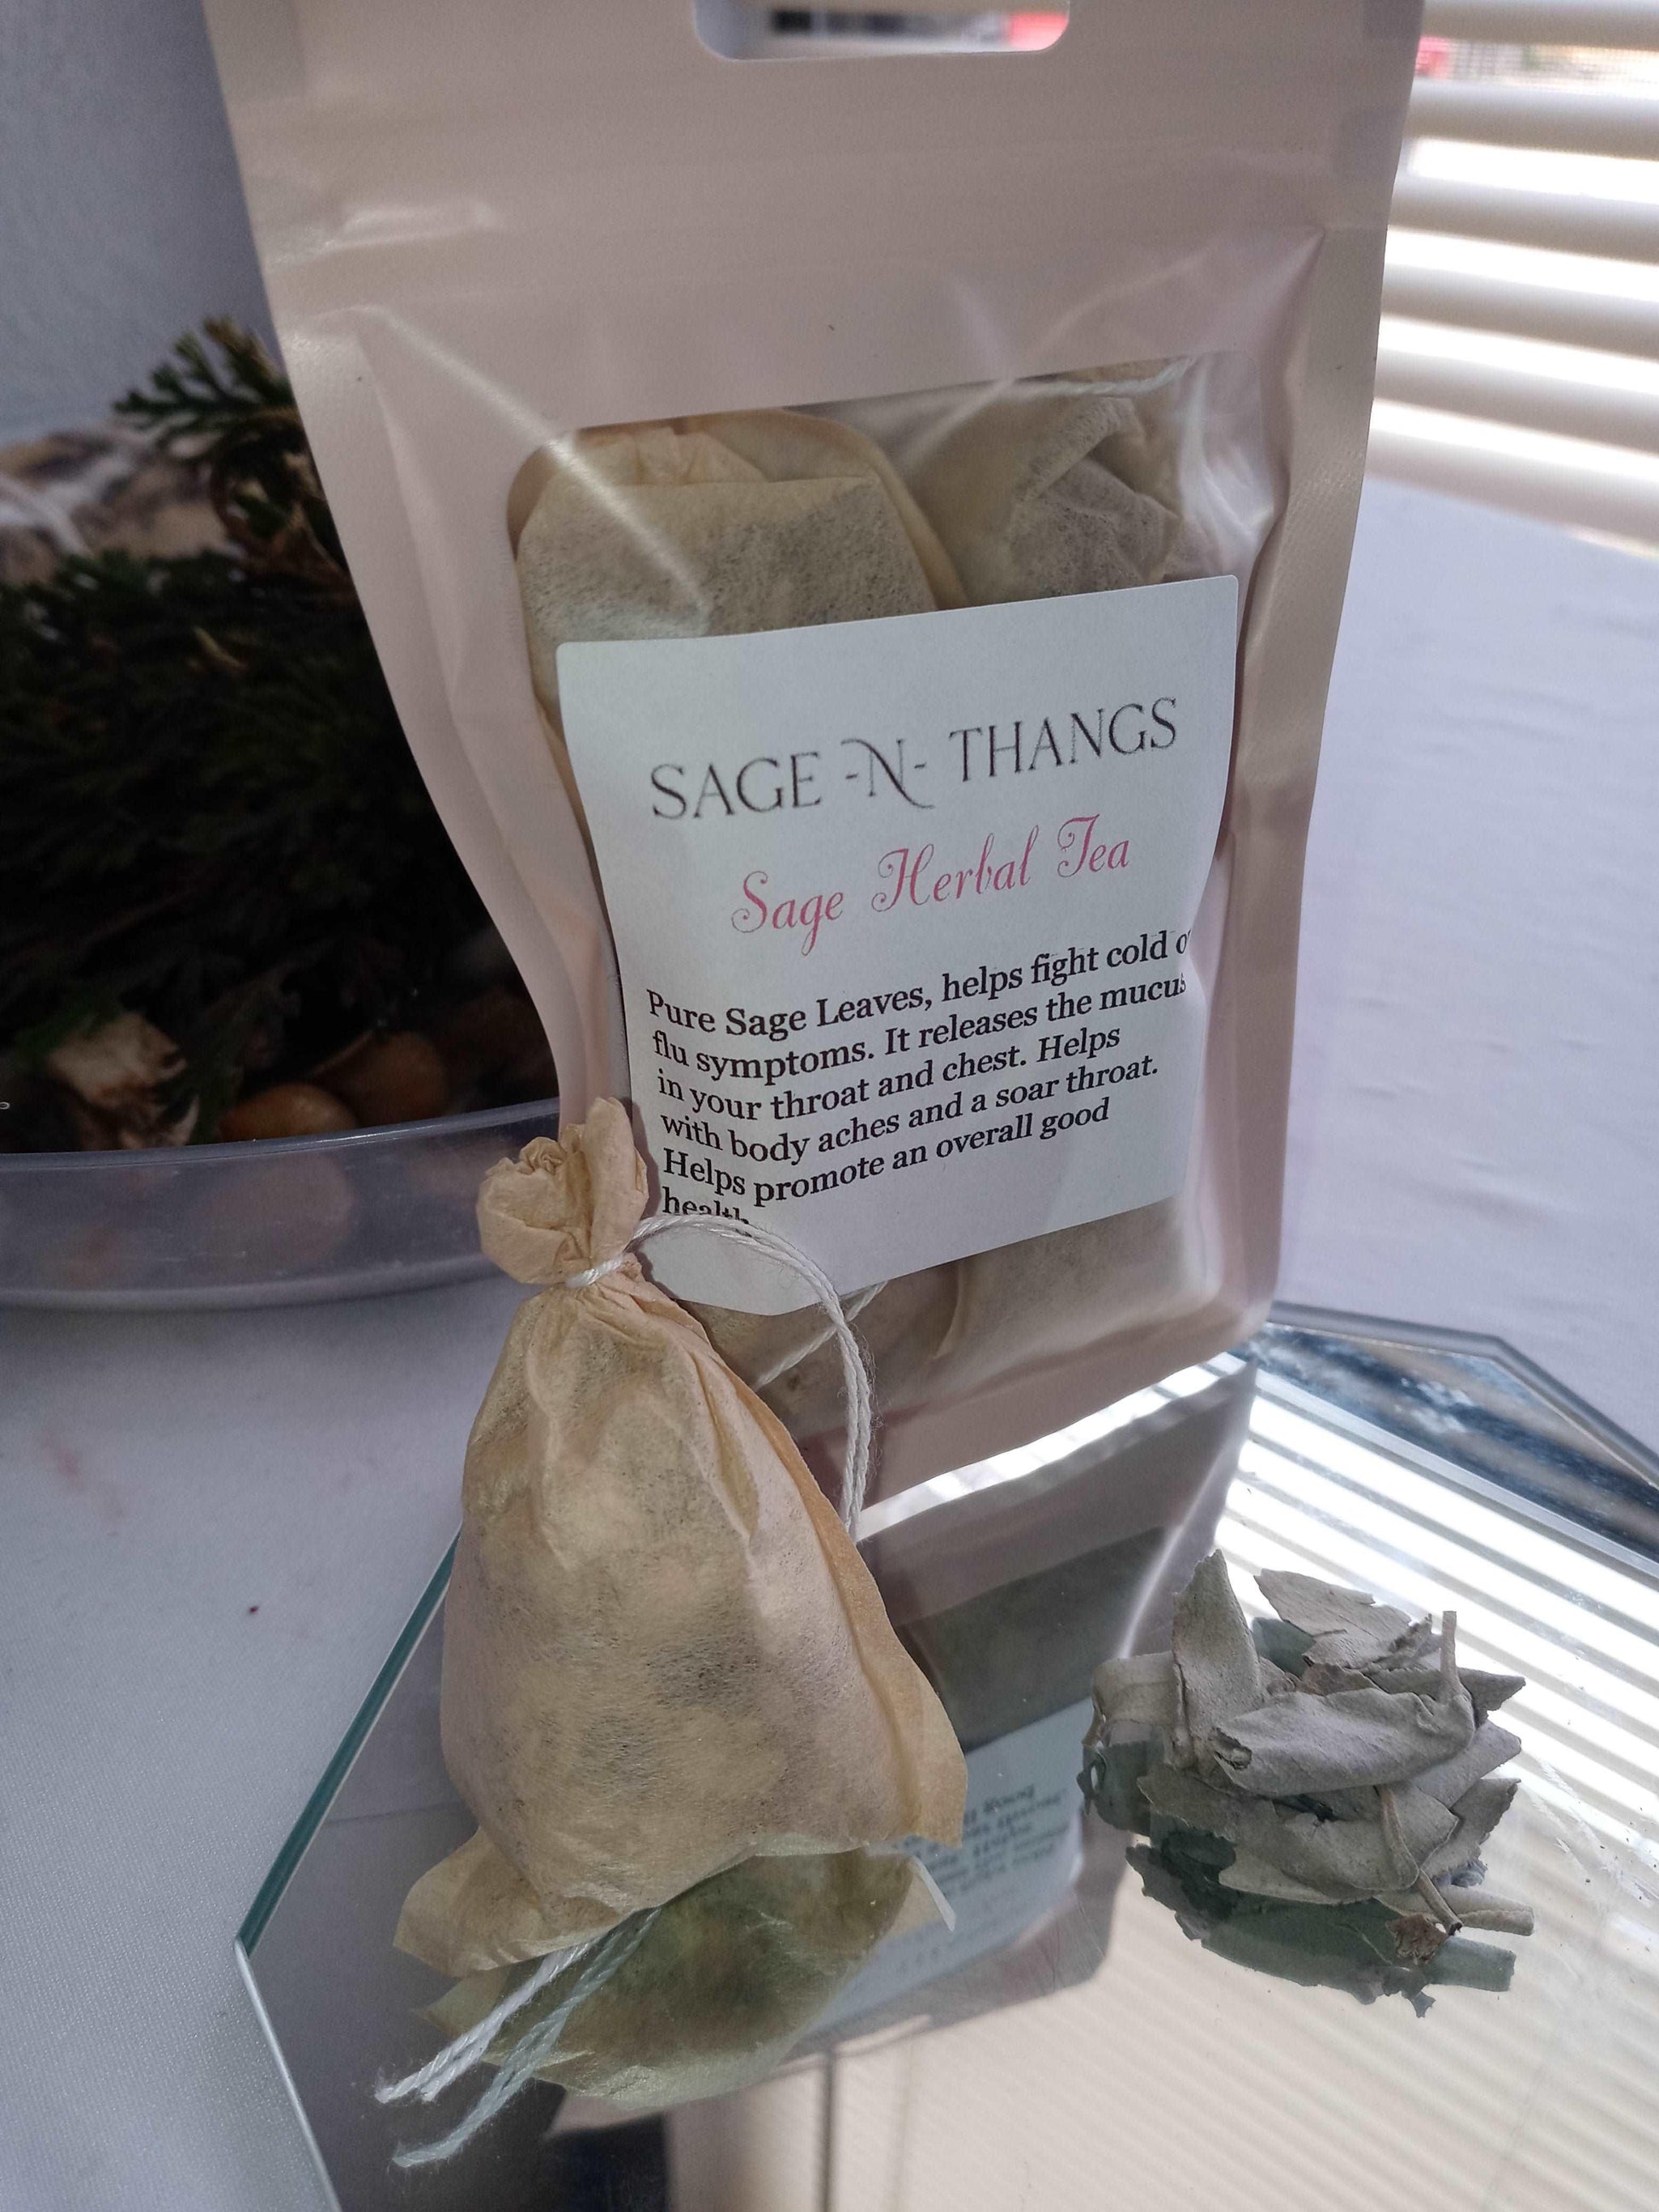 Sage Herbal Tea 🍵 by Sage N Thangs